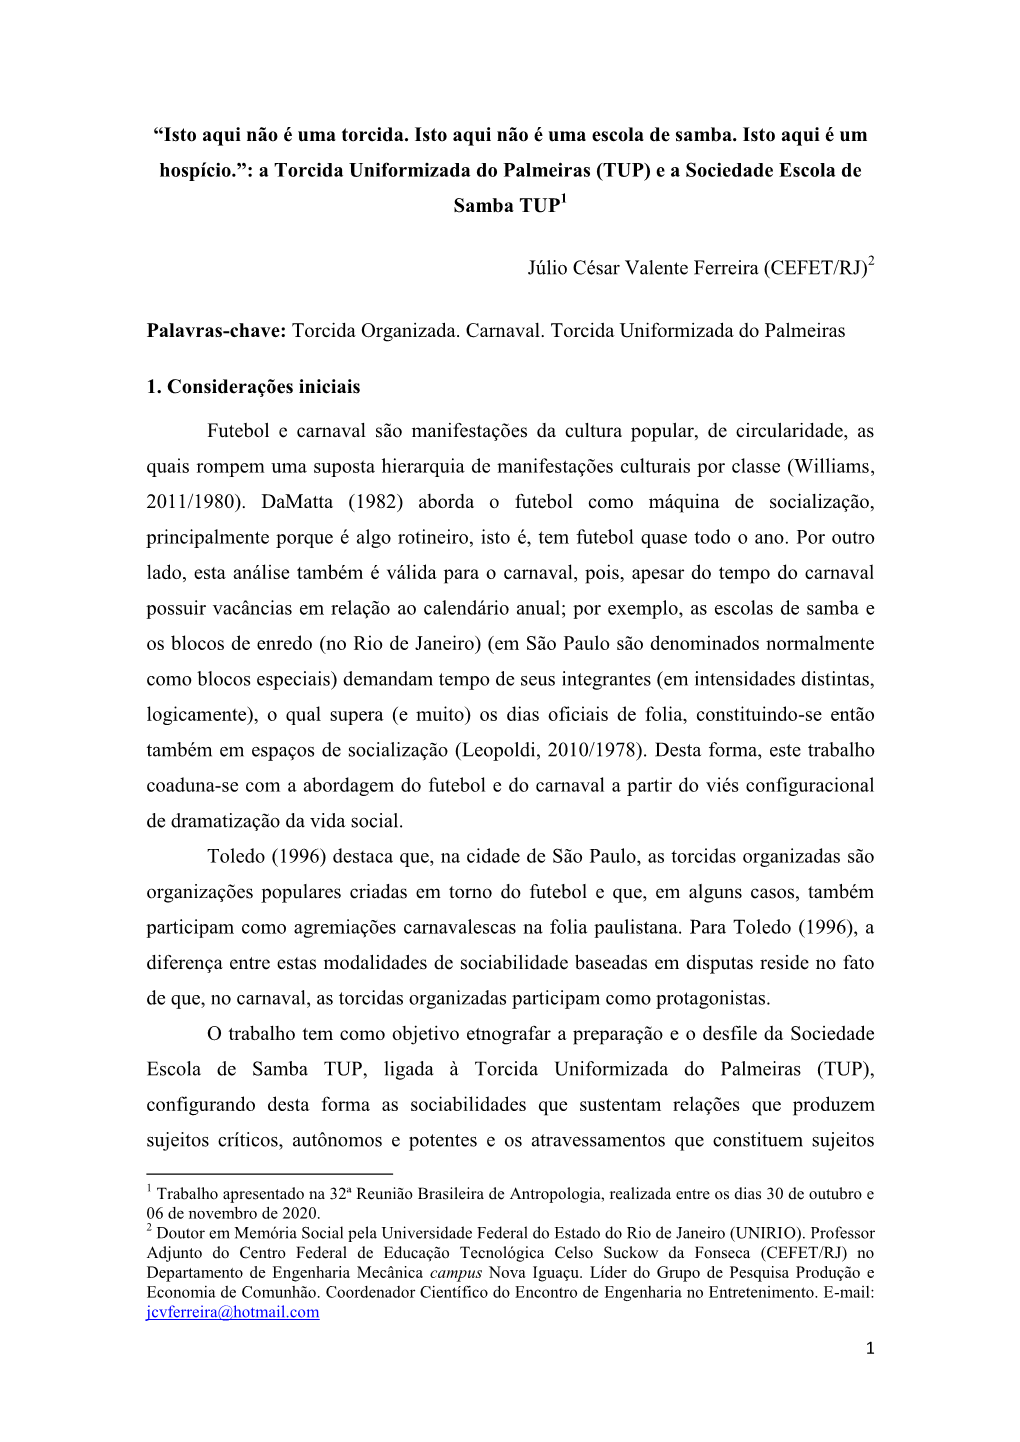 A Torcida Uniformizada Do Palmeiras (TUP) E a Sociedade Escola De Samba TUP1